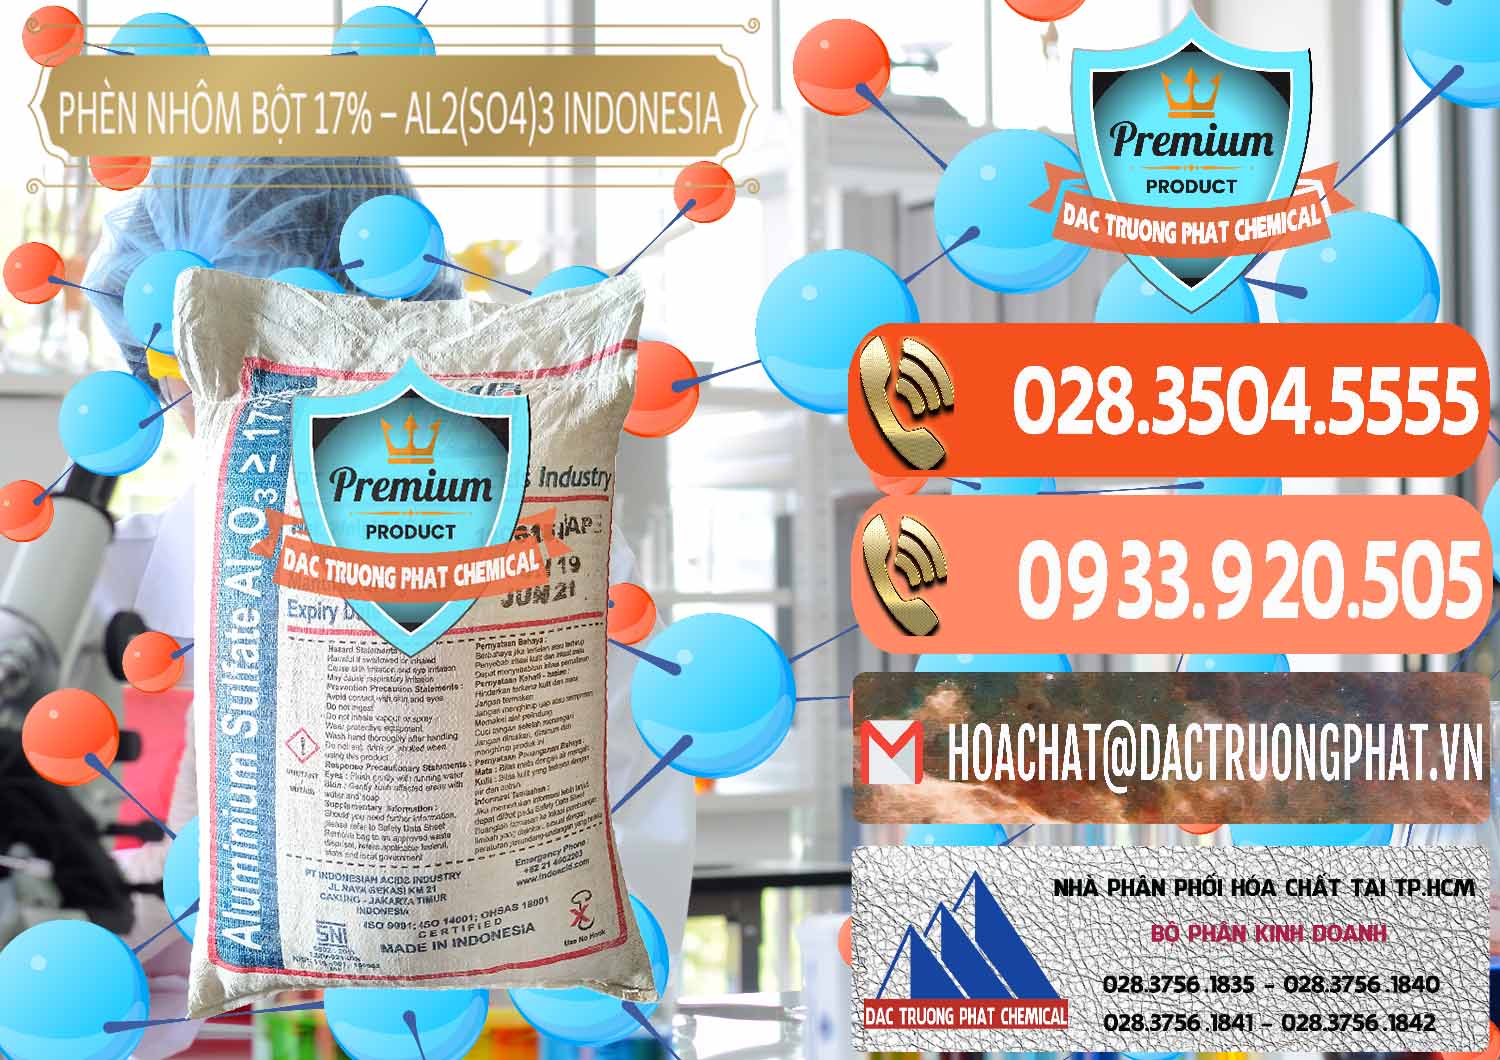 Nơi chuyên cung cấp _ bán Phèn Nhôm Bột - Al2(SO4)3 17% bao 25kg Indonesia - 0114 - Cty chuyên bán - phân phối hóa chất tại TP.HCM - hoachatmientay.com